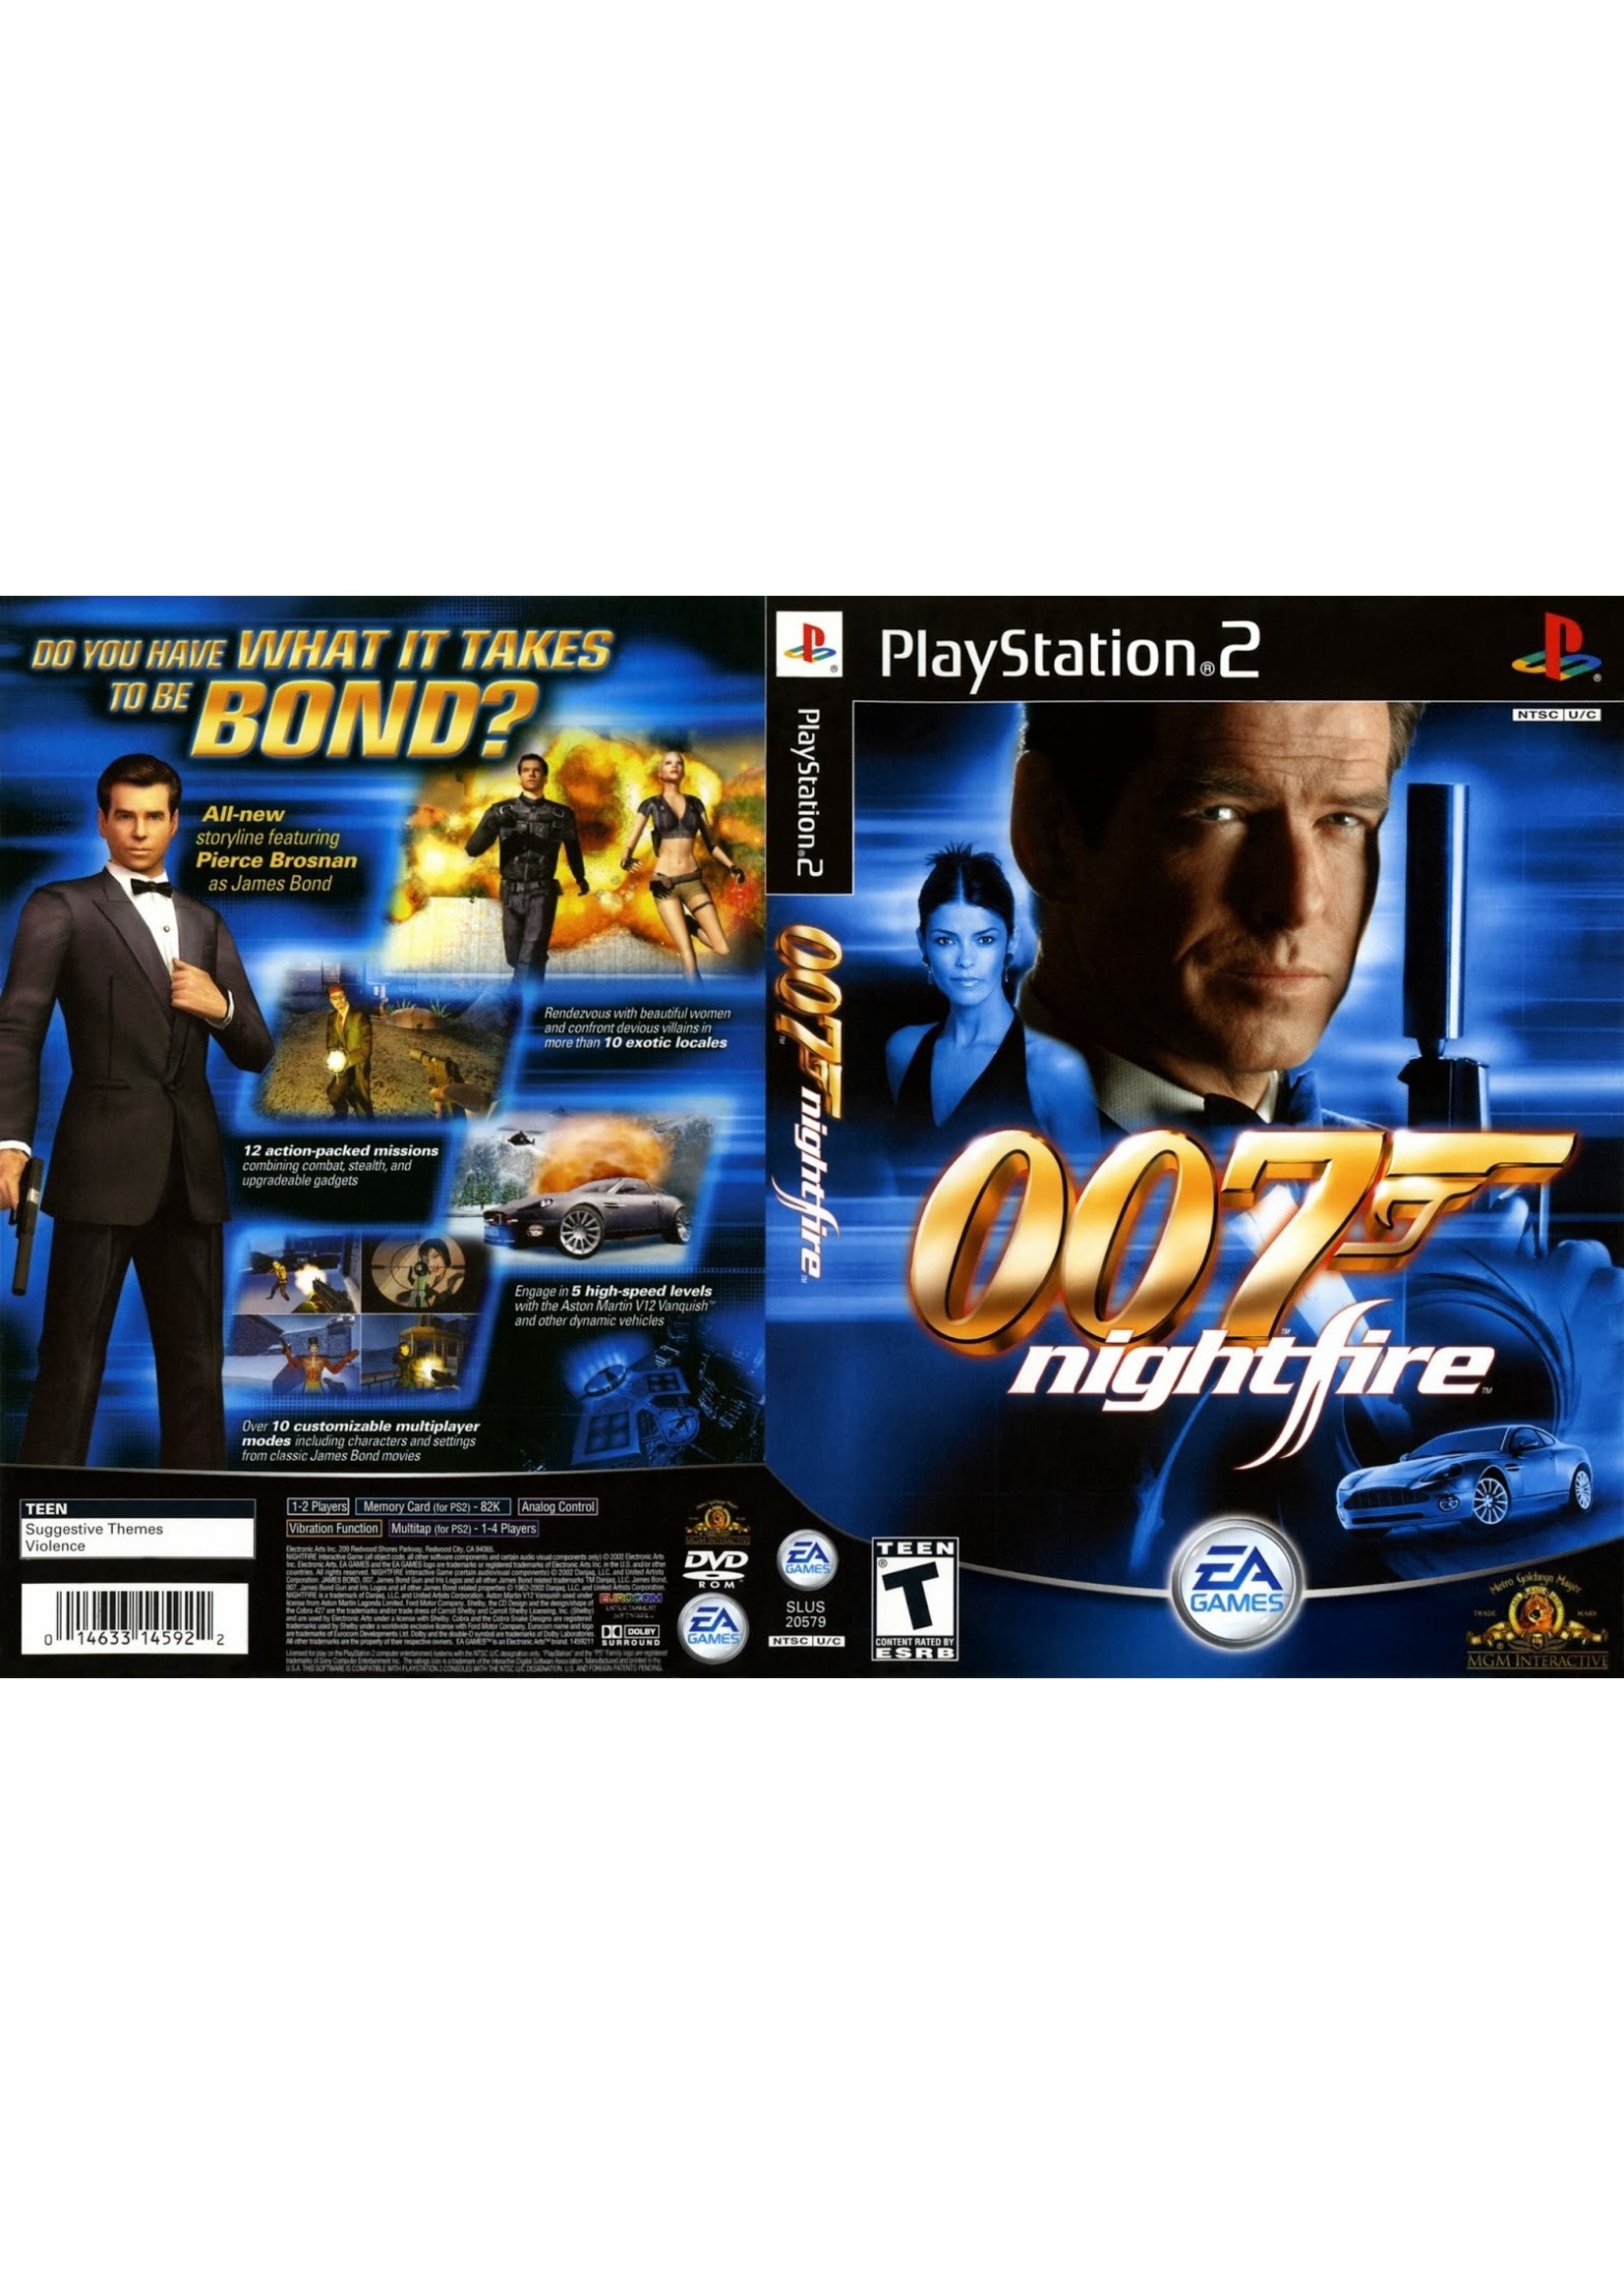 Sony Playstation 2 (PS2) 007 Nightfire